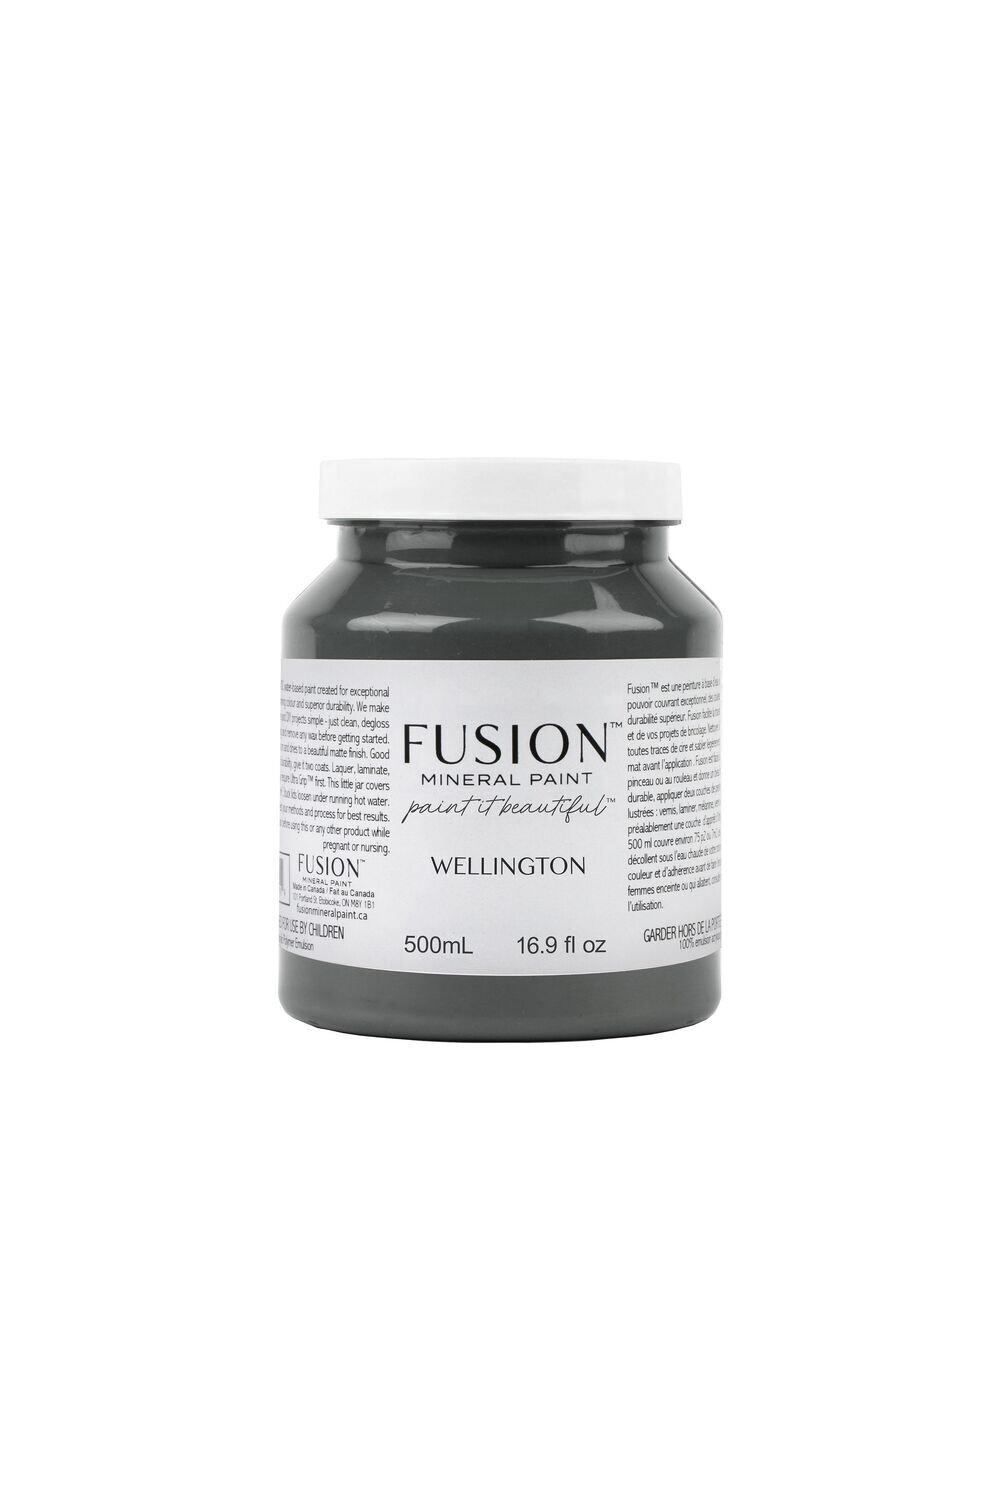 Fusion Wellington 500ml